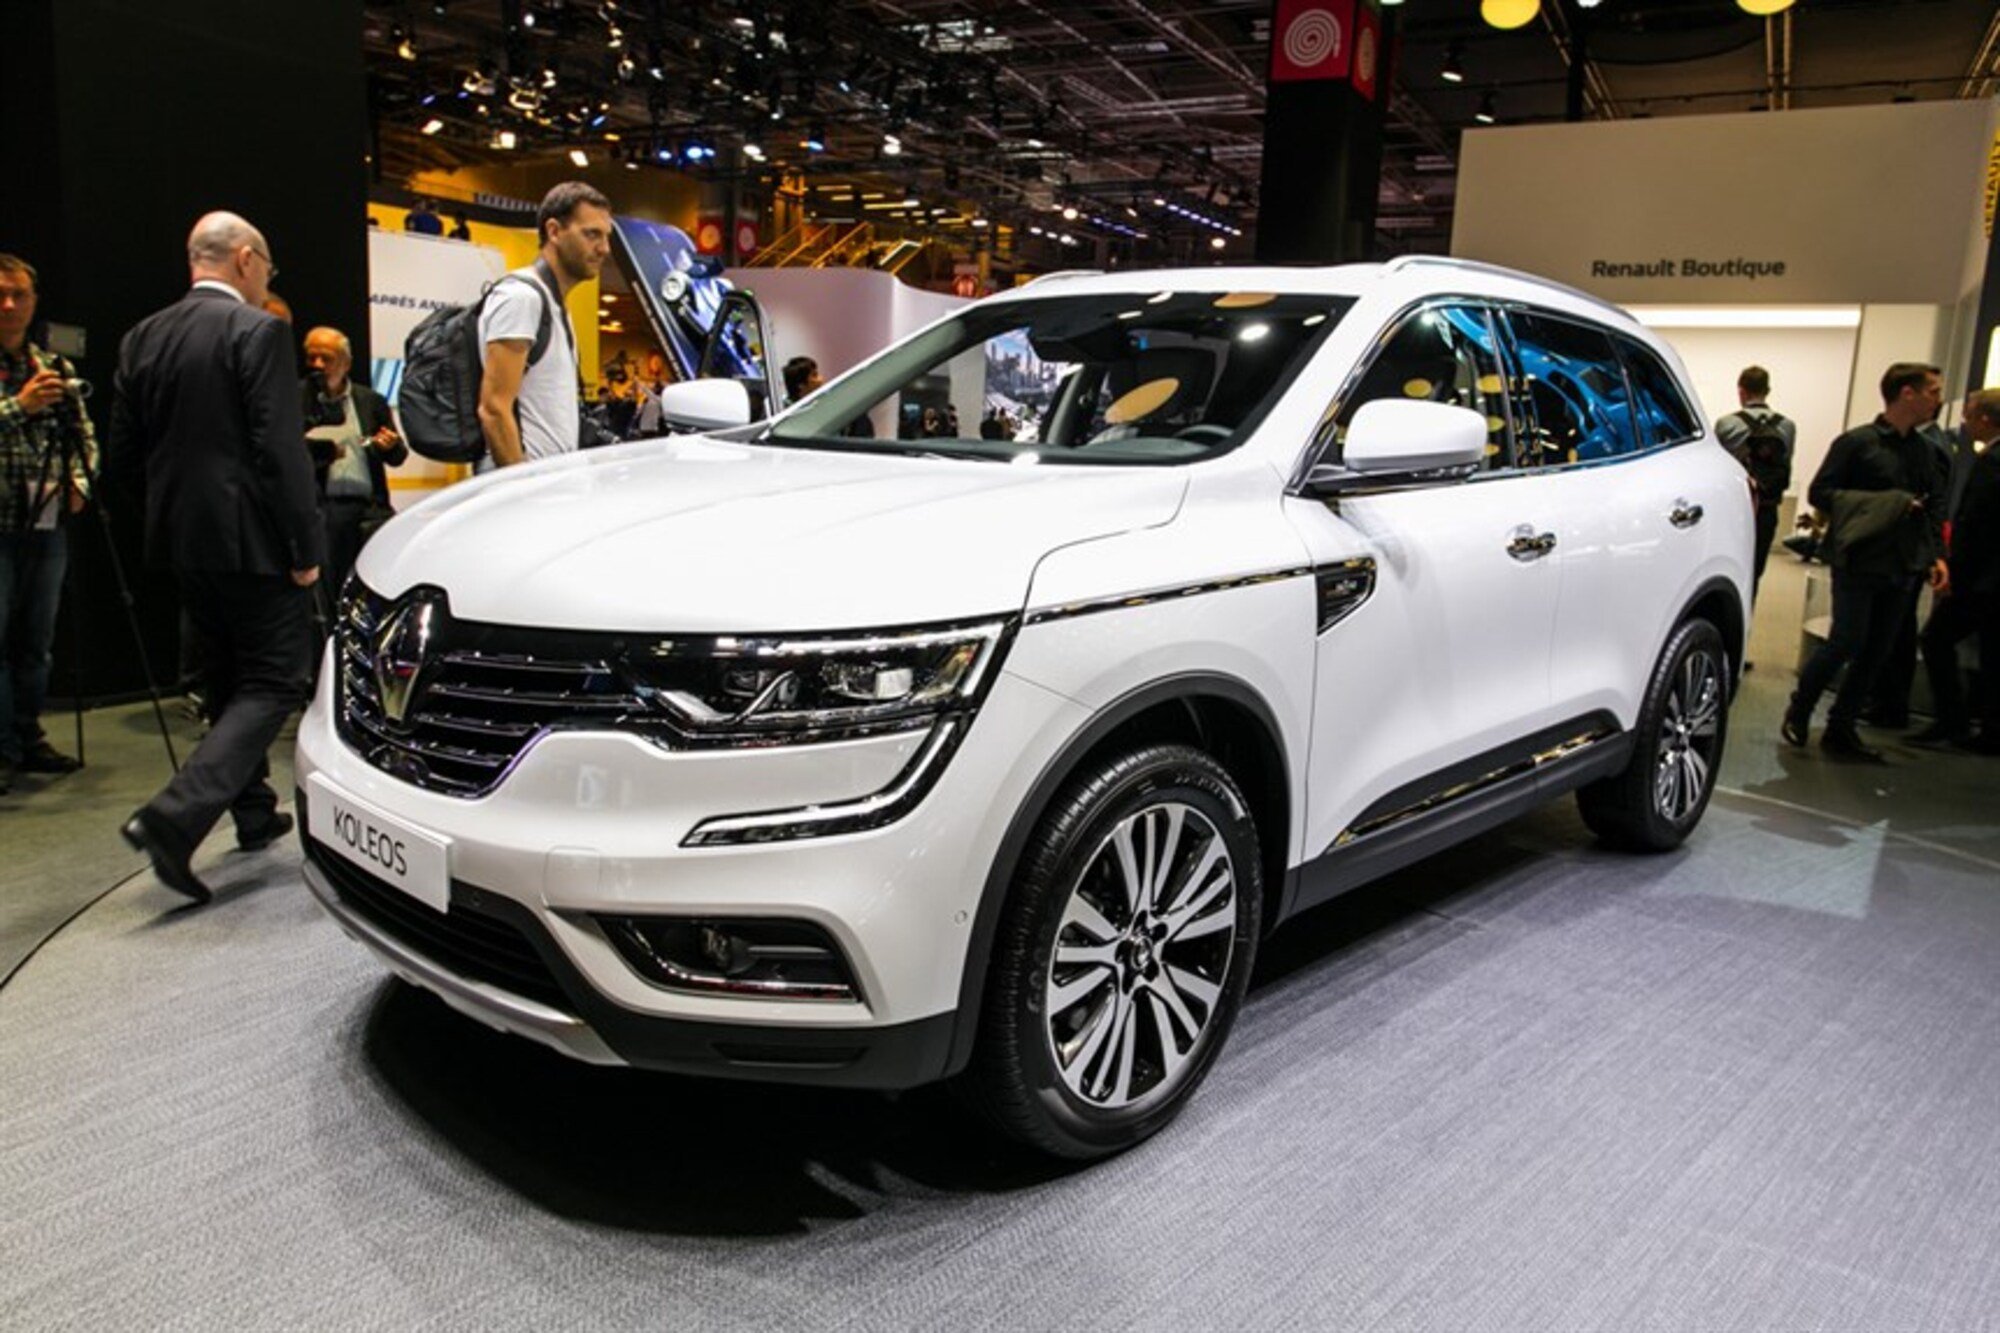 Nuova Renault Koleos: raffinato SUV al Salone di Parigi 2016 [Video]